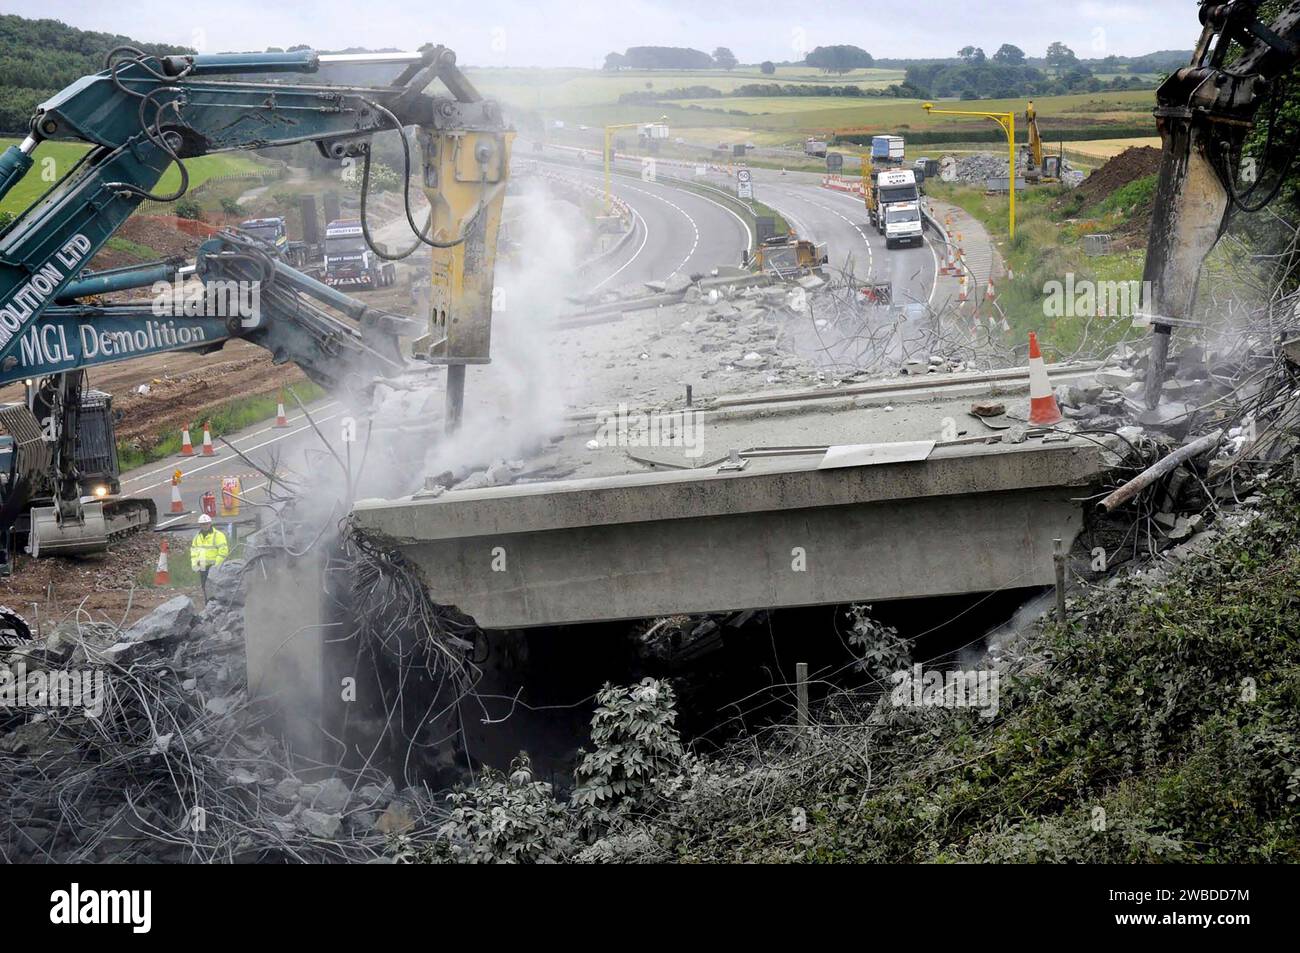 L'industrie de la construction au travail, démolition de pont sur l'A1, pour permettre l'élargissement de la route, West Yorkshire, Royaume-Uni Banque D'Images